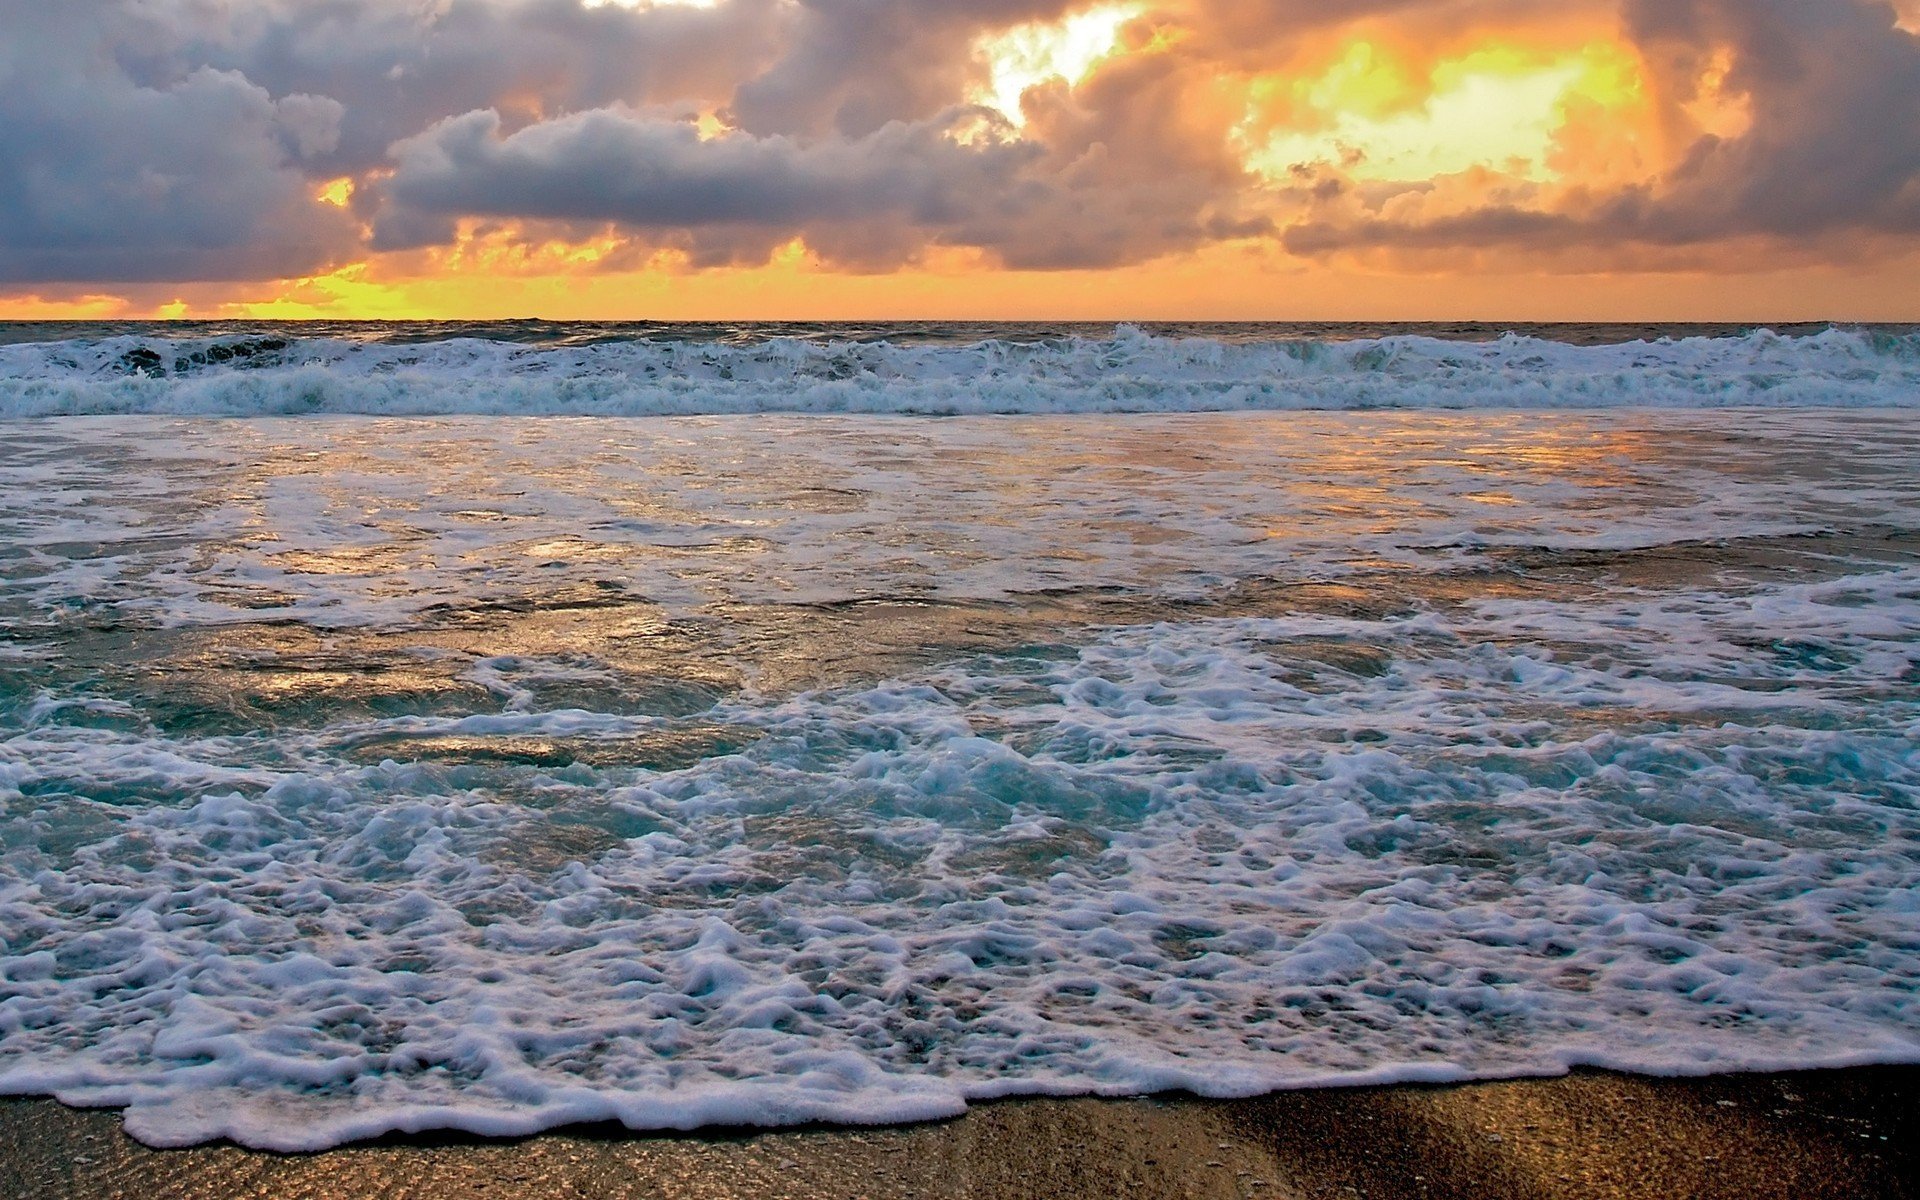 Фото моря в хорошем качестве на заставку телефона бесплатно